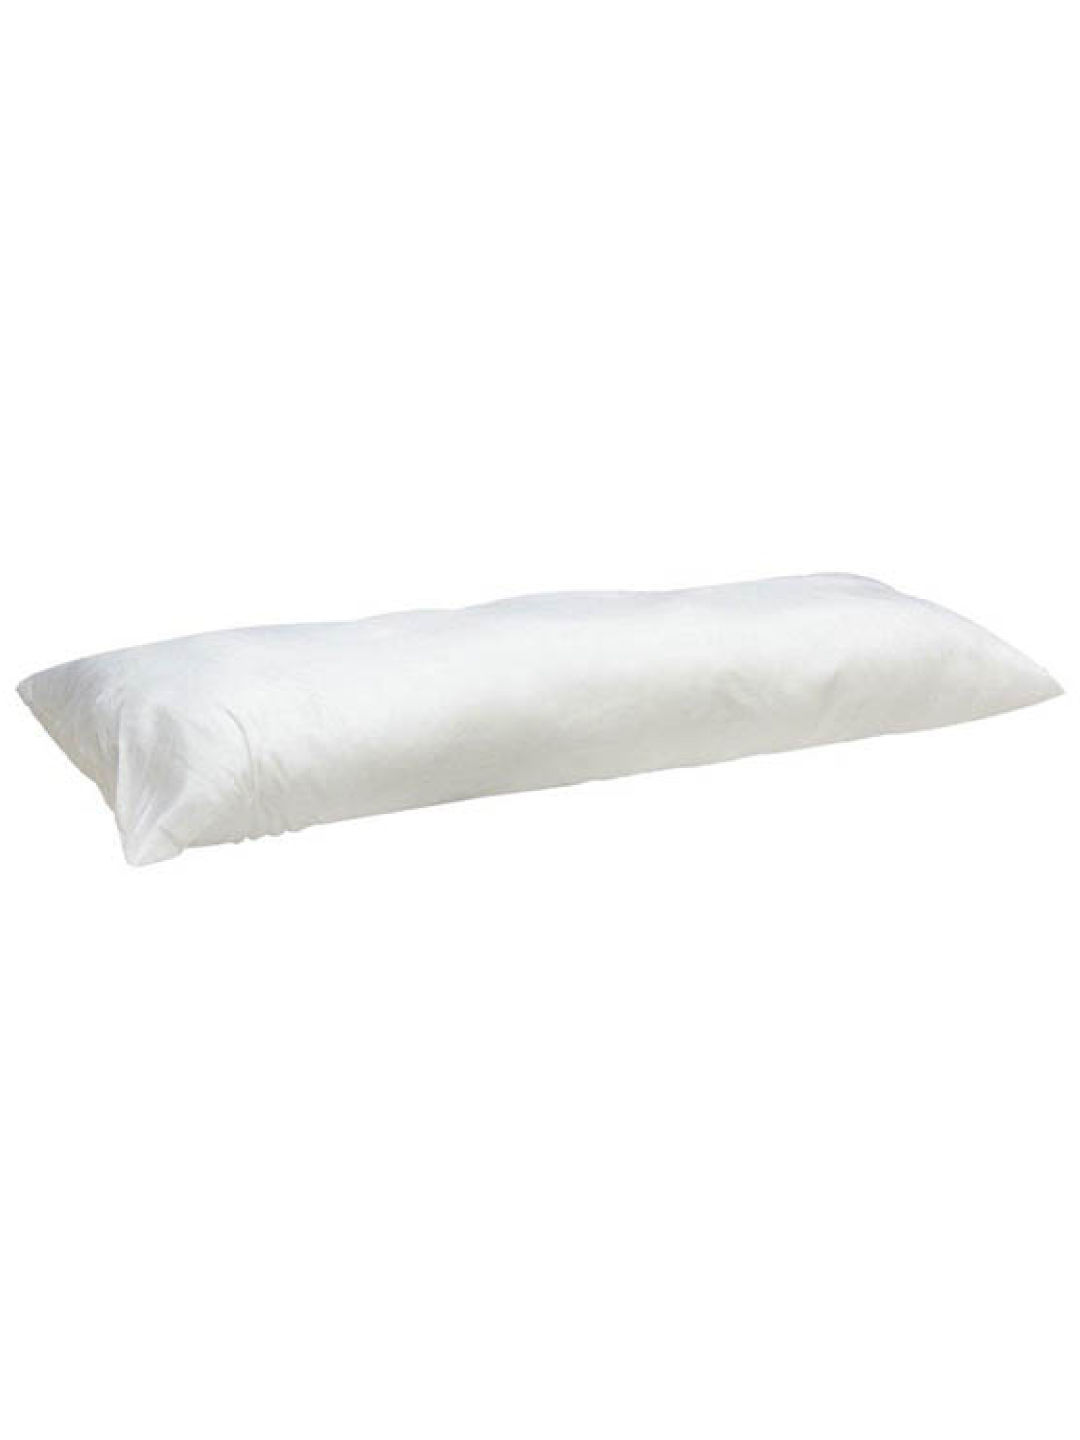 Mandaue Foam Dreams Huggy Pillow